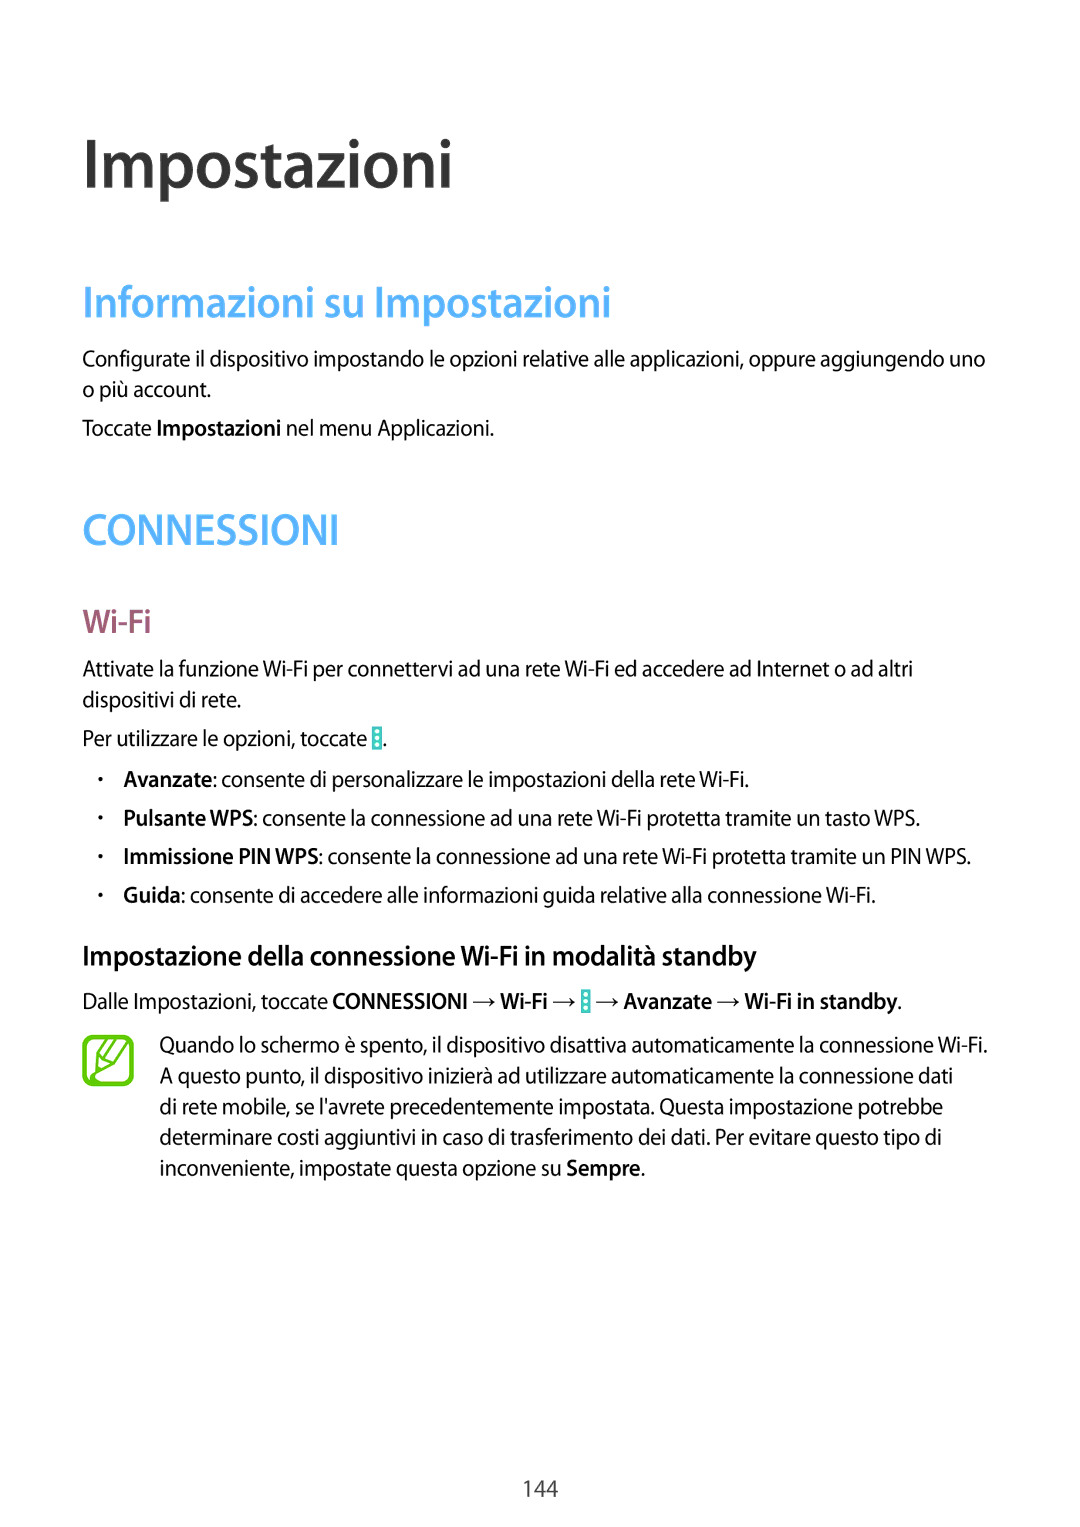 Samsung SM-P9050ZKAXEO manual Informazioni su Impostazioni, Impostazione della connessione Wi-Fi in modalità standby 